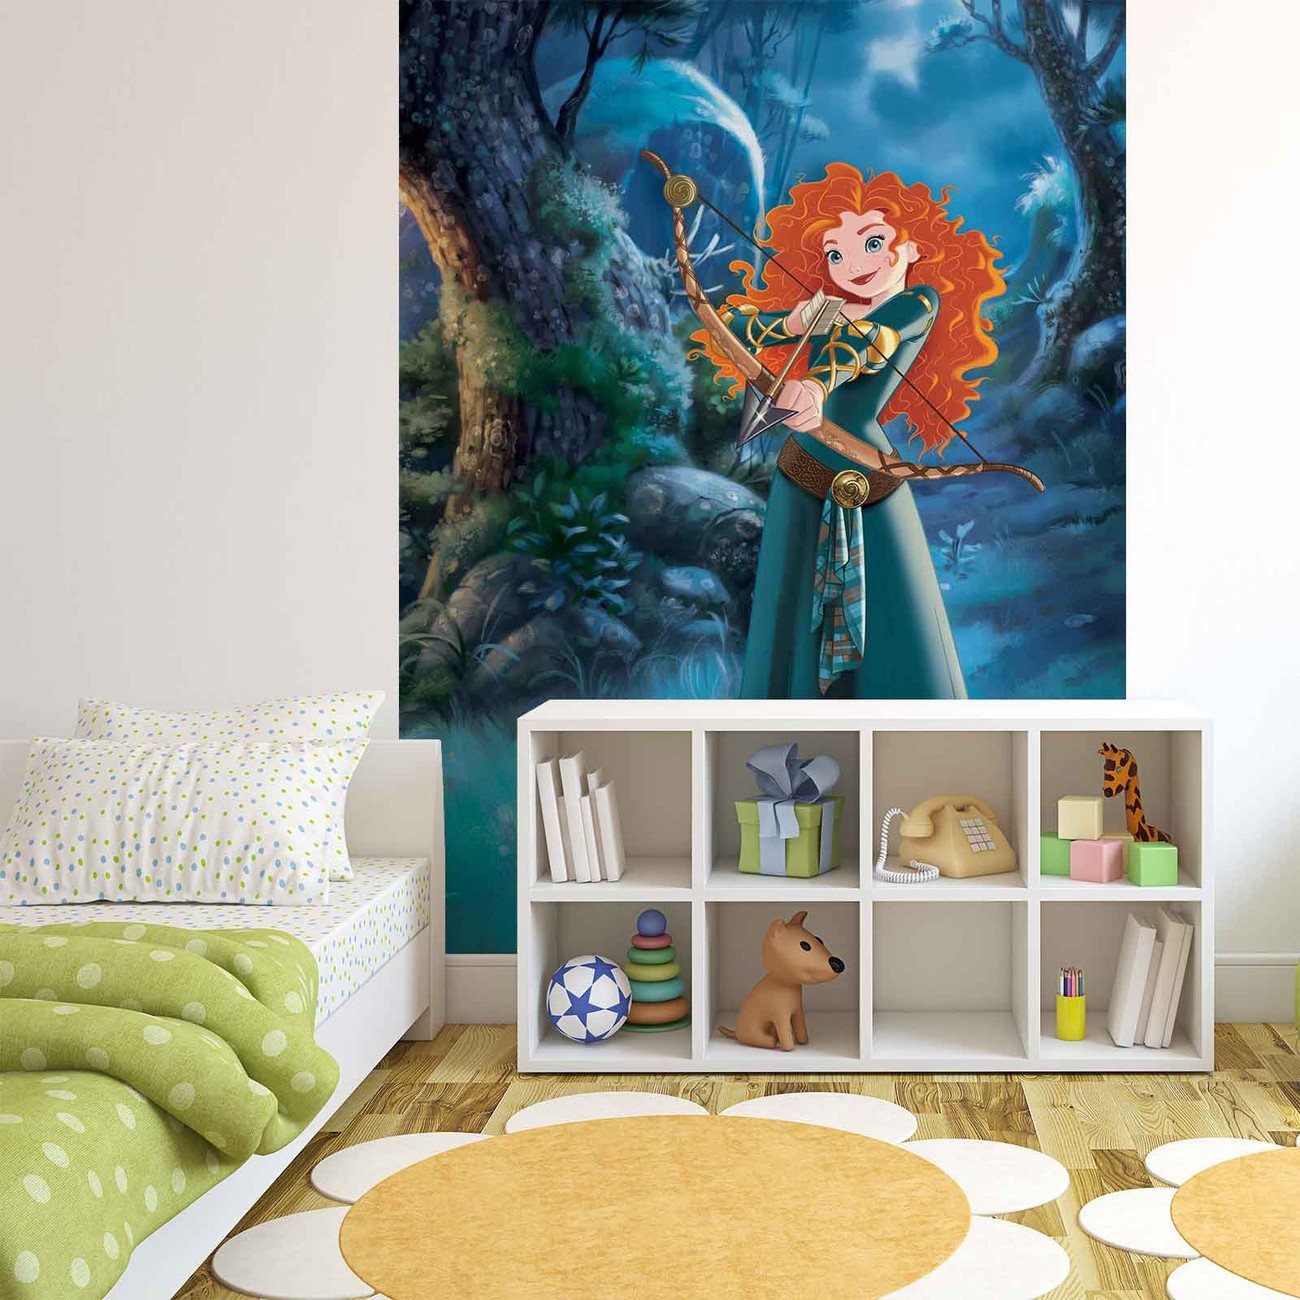 Disney Princesses Merida Brave Wall Paper Mural | Buy at EuroPosters